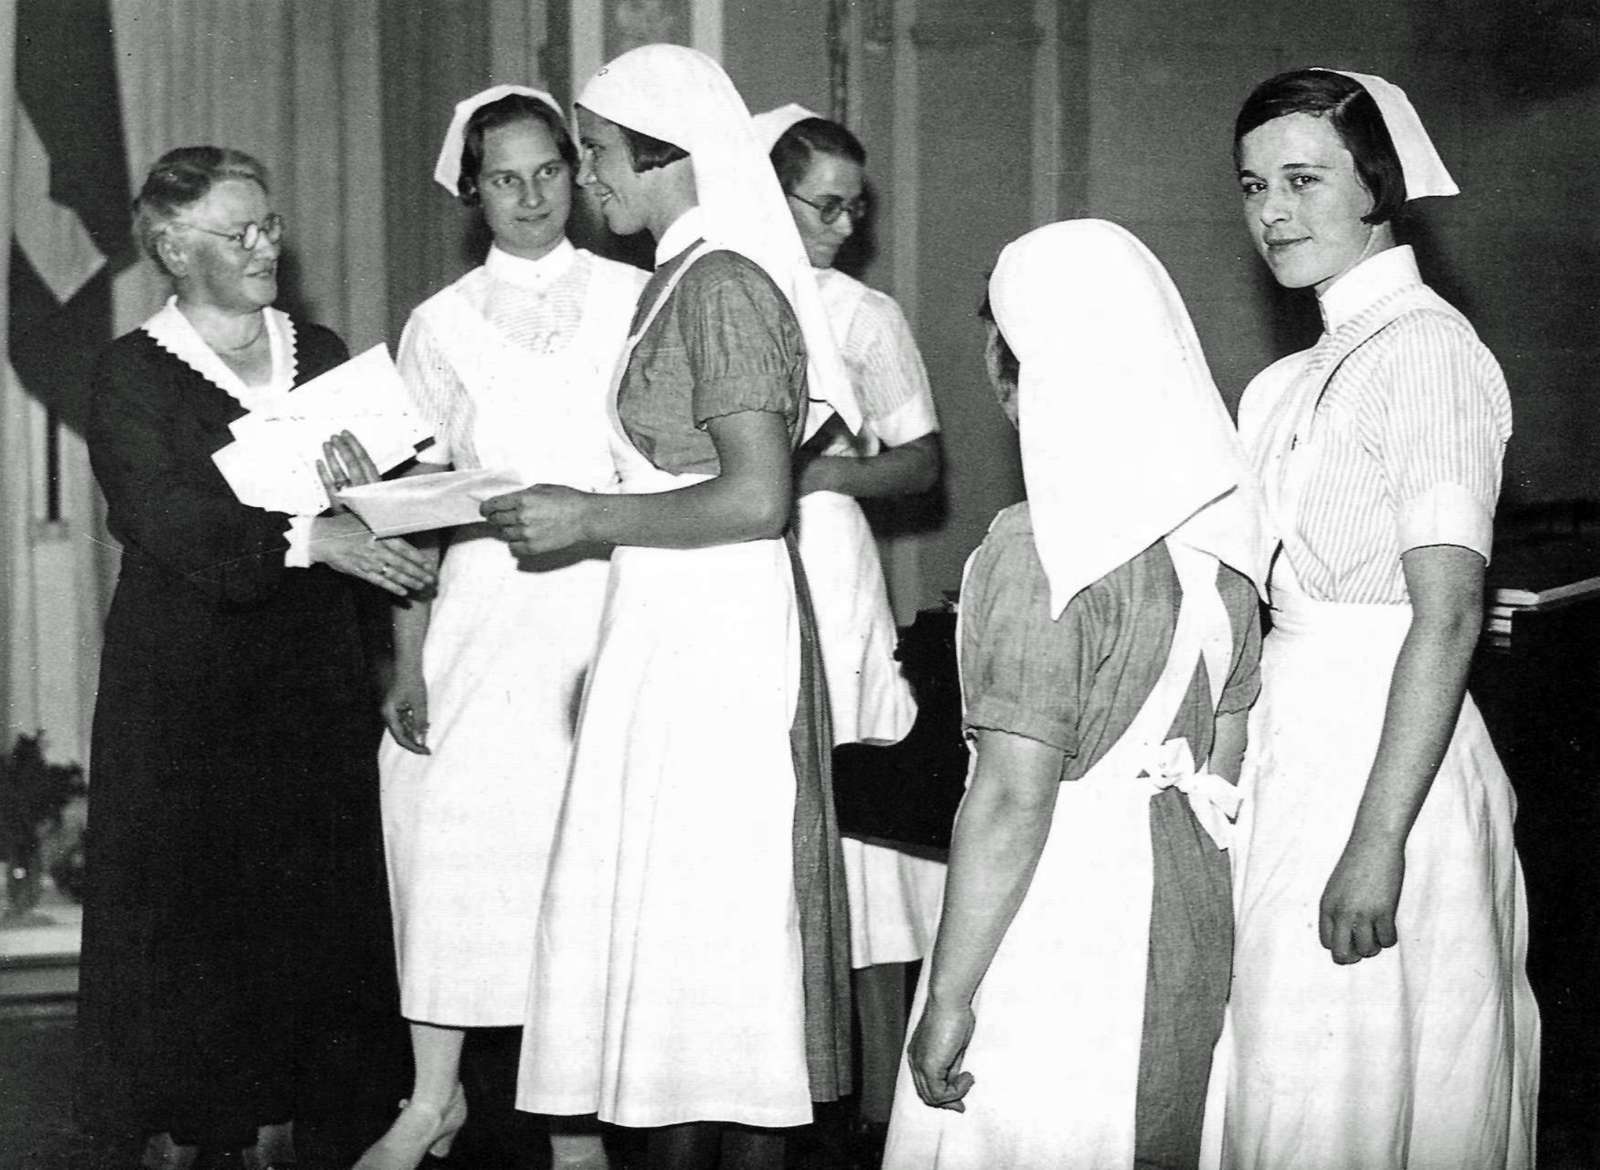 Dansk Sygeplejeråds formand, Margrethe Koch, overrækker emblem og sygeplejerskeløfte til nyuddannede sygeplejersker 1933